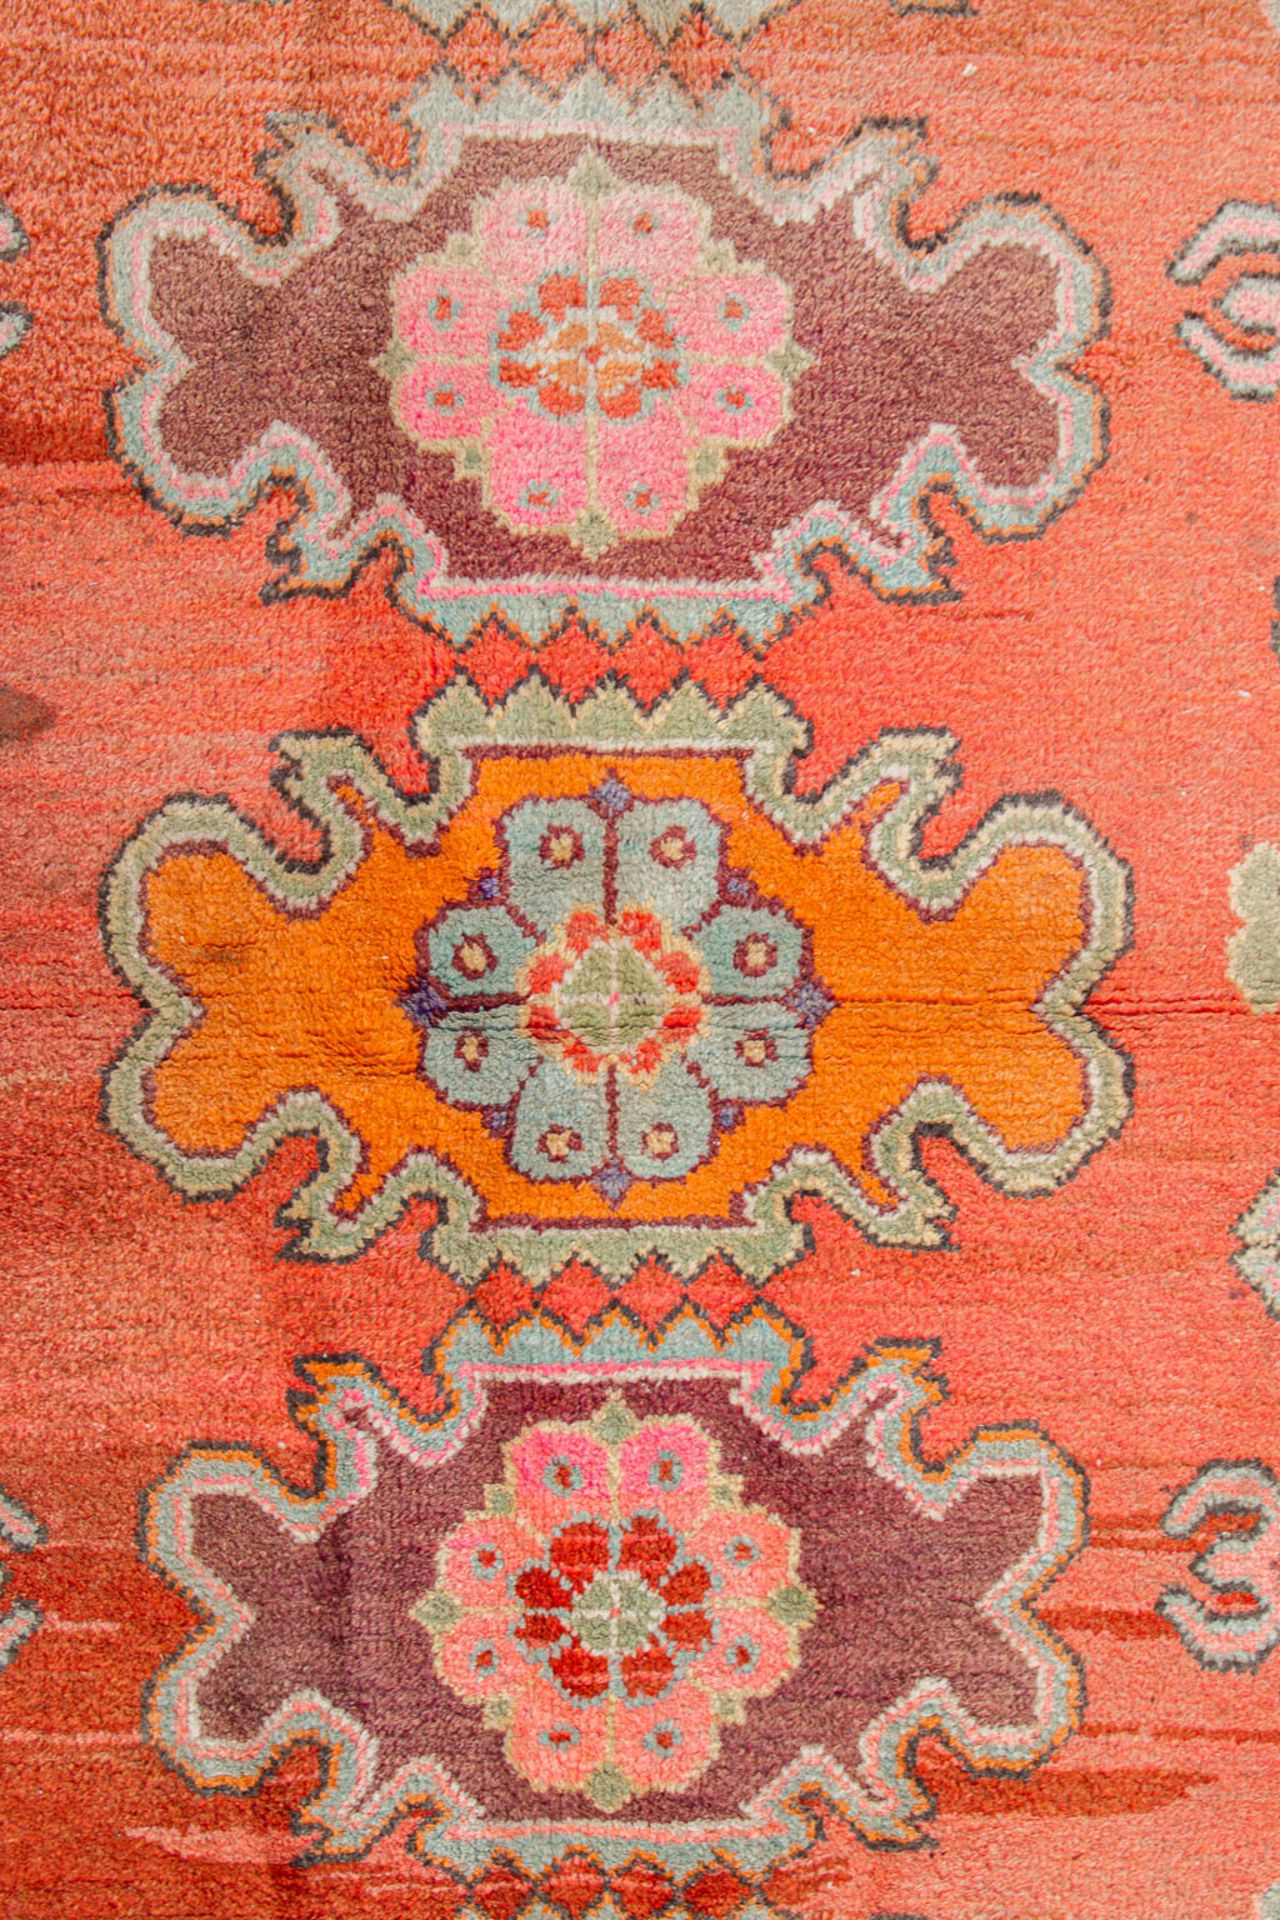 An Oriental hand-made carpet, Samarkand (200 x 135) (200 x 135 cm) - Image 3 of 7